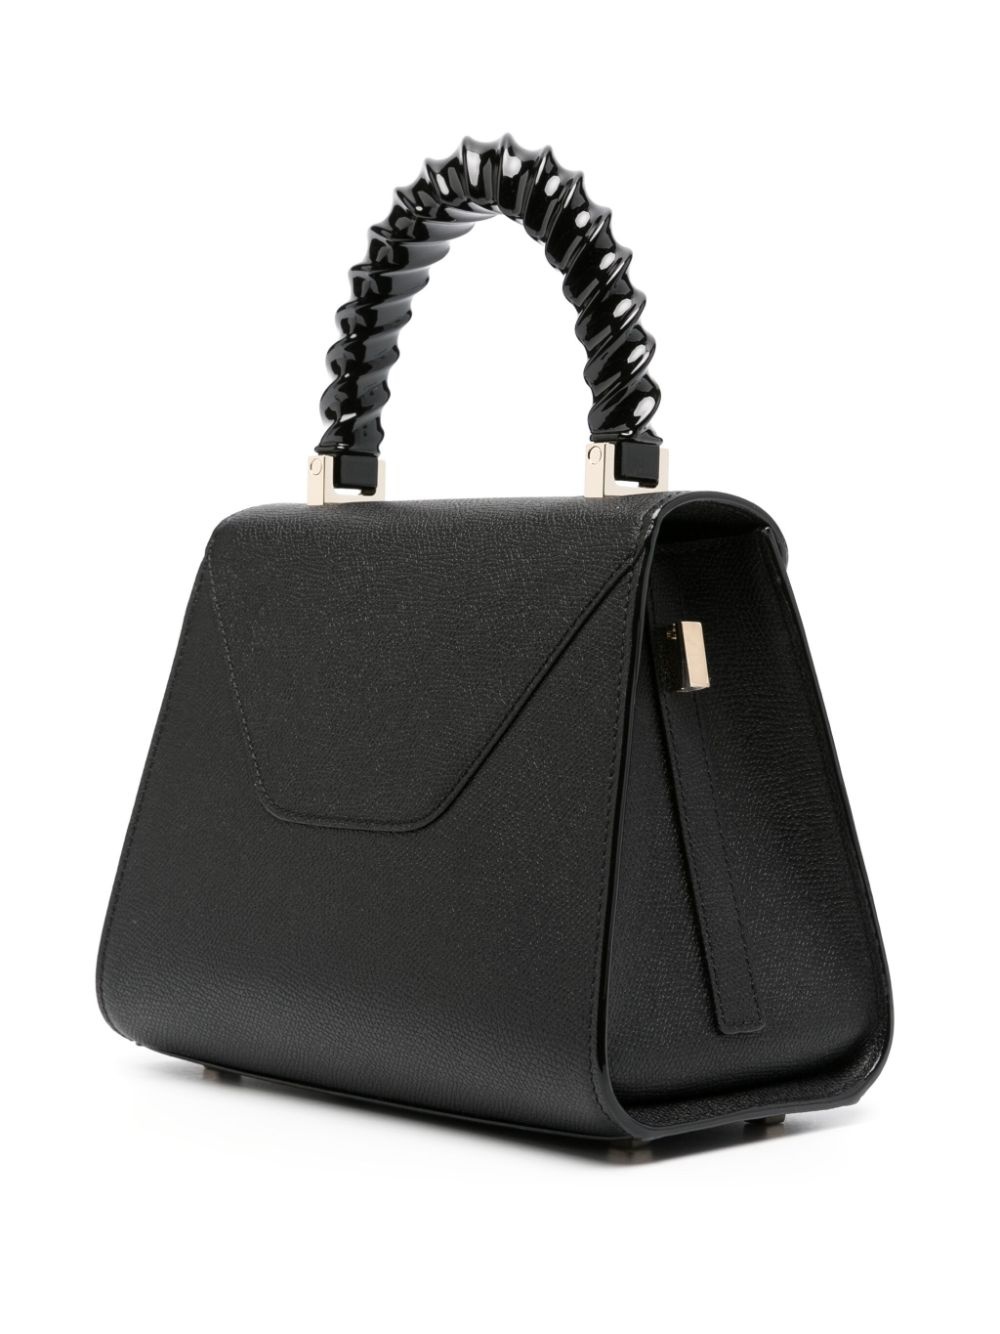 Iside leather mini handbag - 2